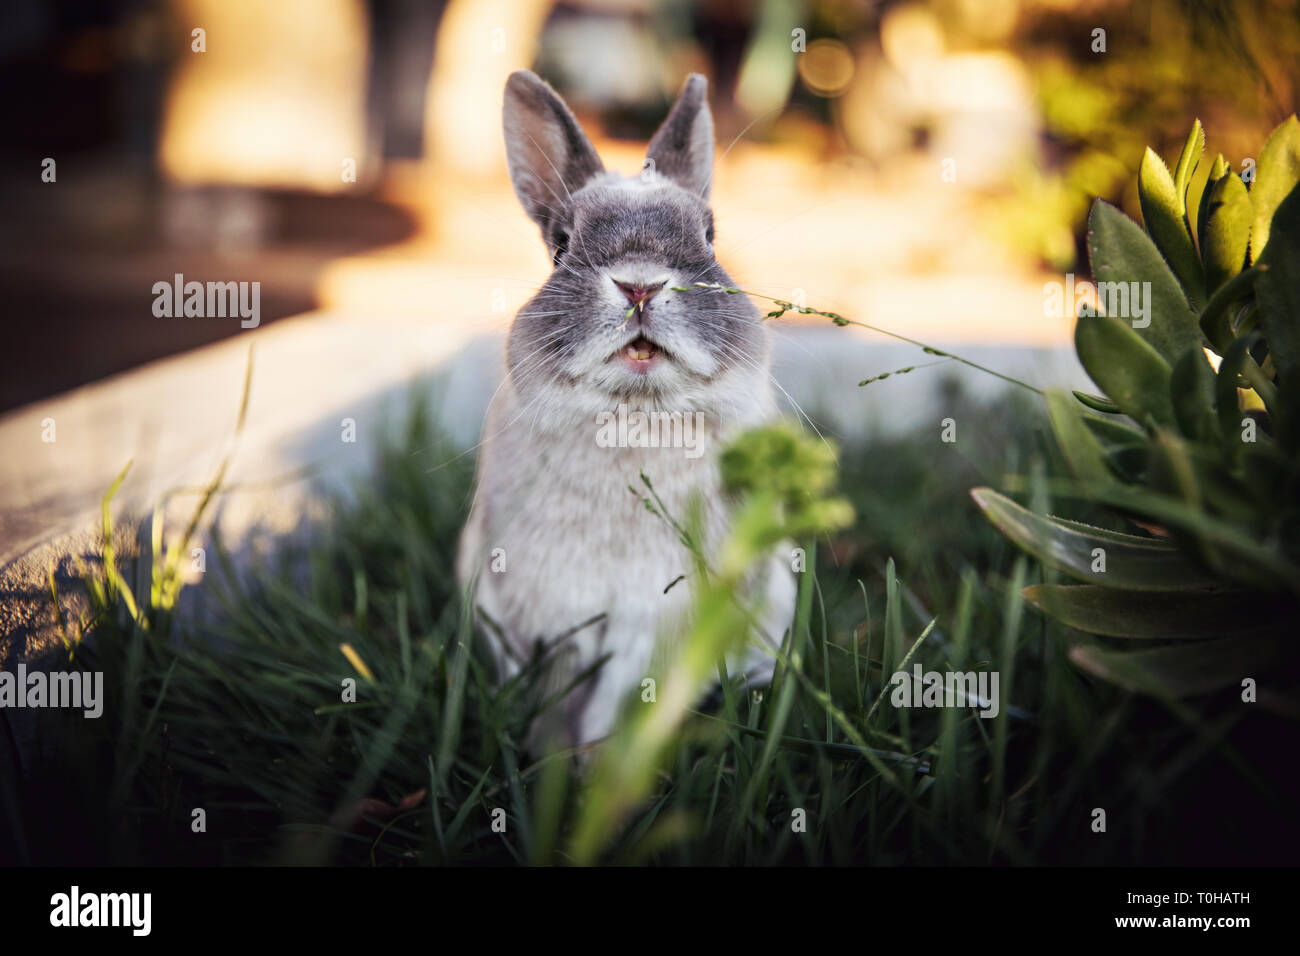 Un portrait expressif d'un lapin nain avec sa bouche un espace extérieur herbeux. Banque D'Images